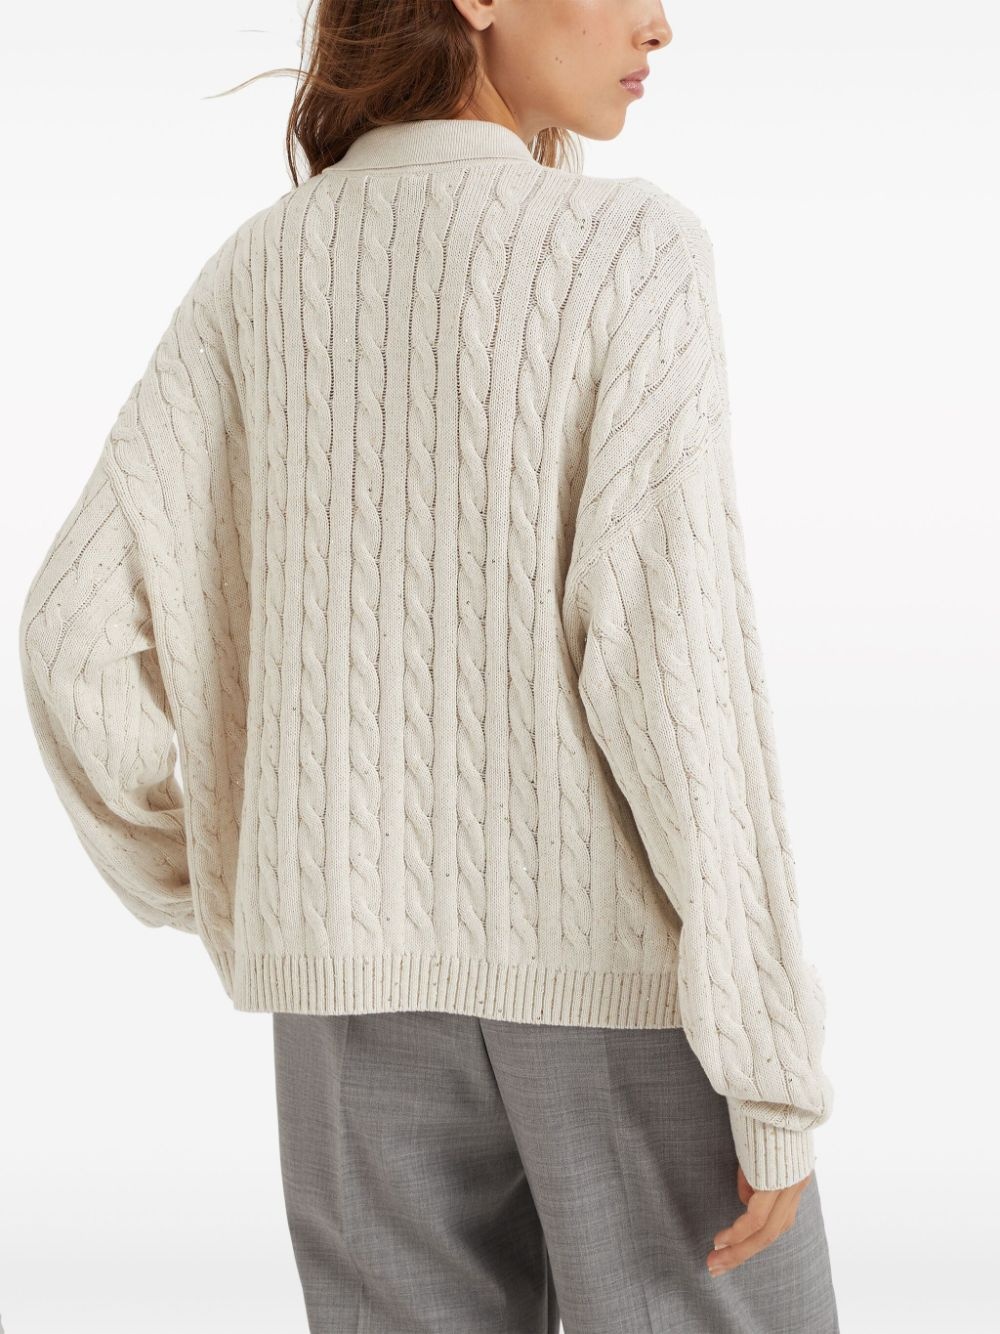 sequin-embellished cable-knit jumper - 4